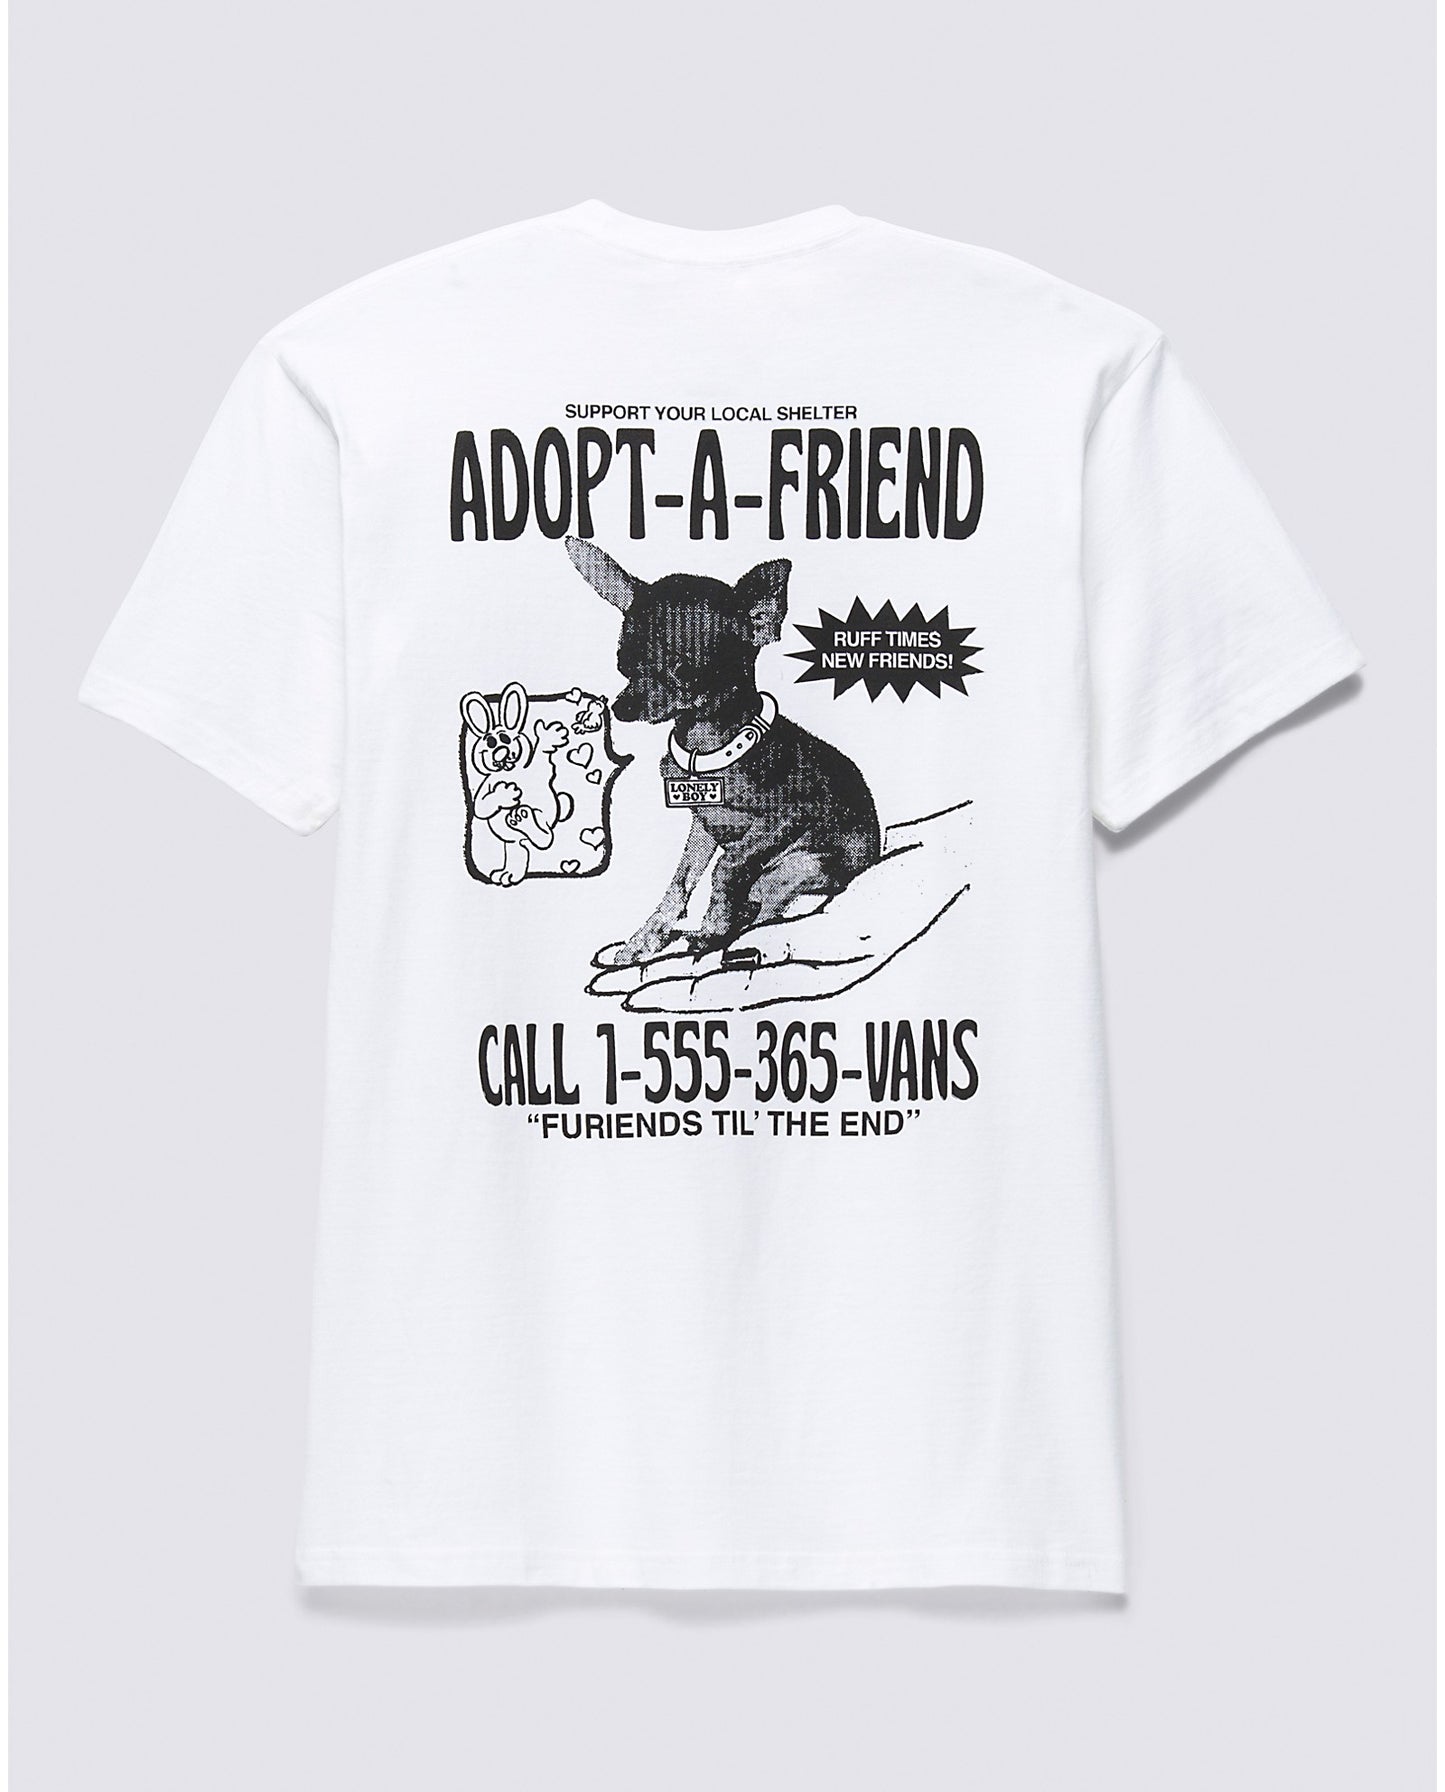 VANS Adopted A Friend T-Shirt